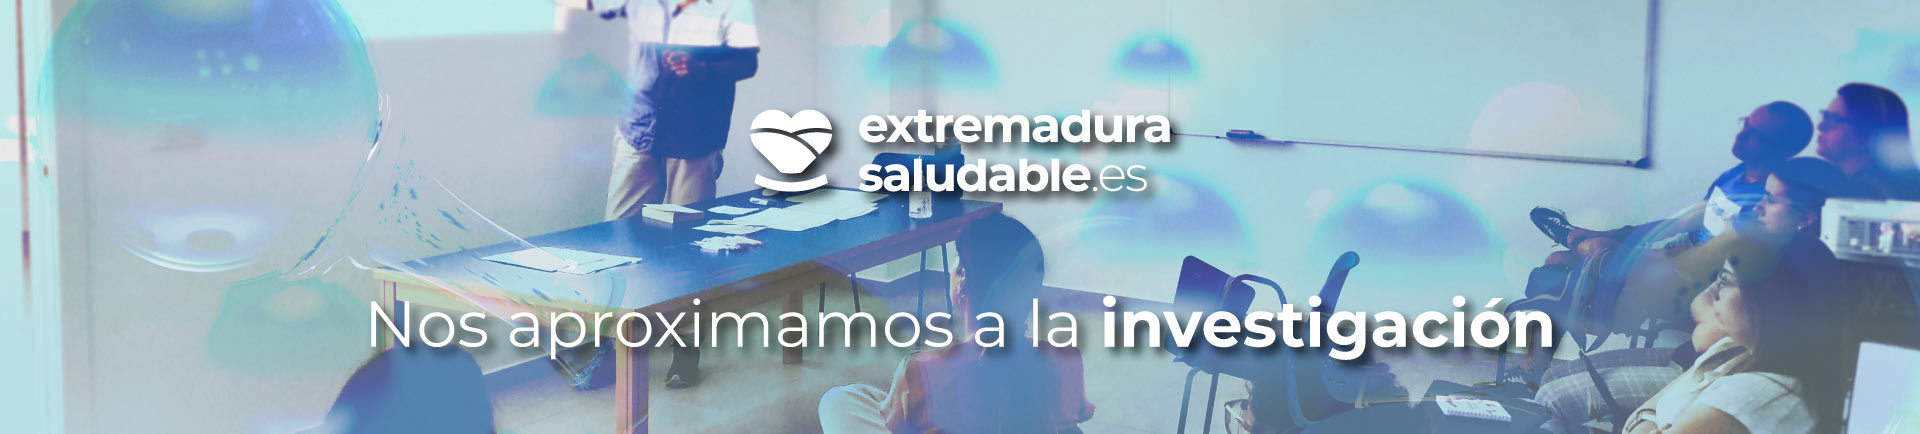 Investigación - Extremadura Saludable